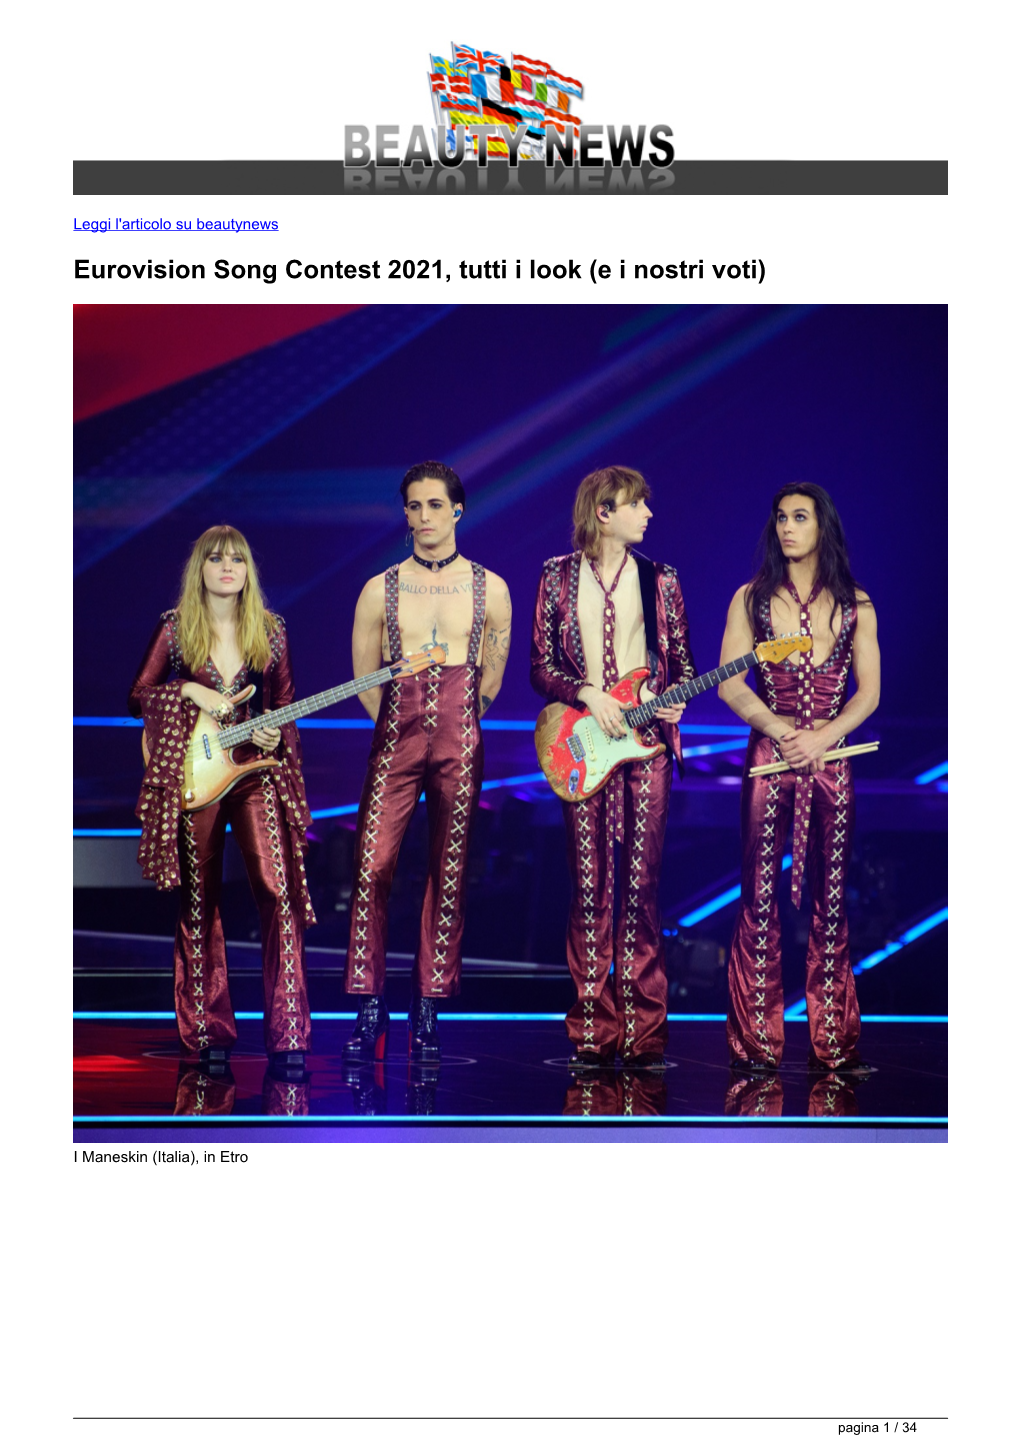 Eurovision Song Contest 2021, Tutti I Look (E I Nostri Voti)